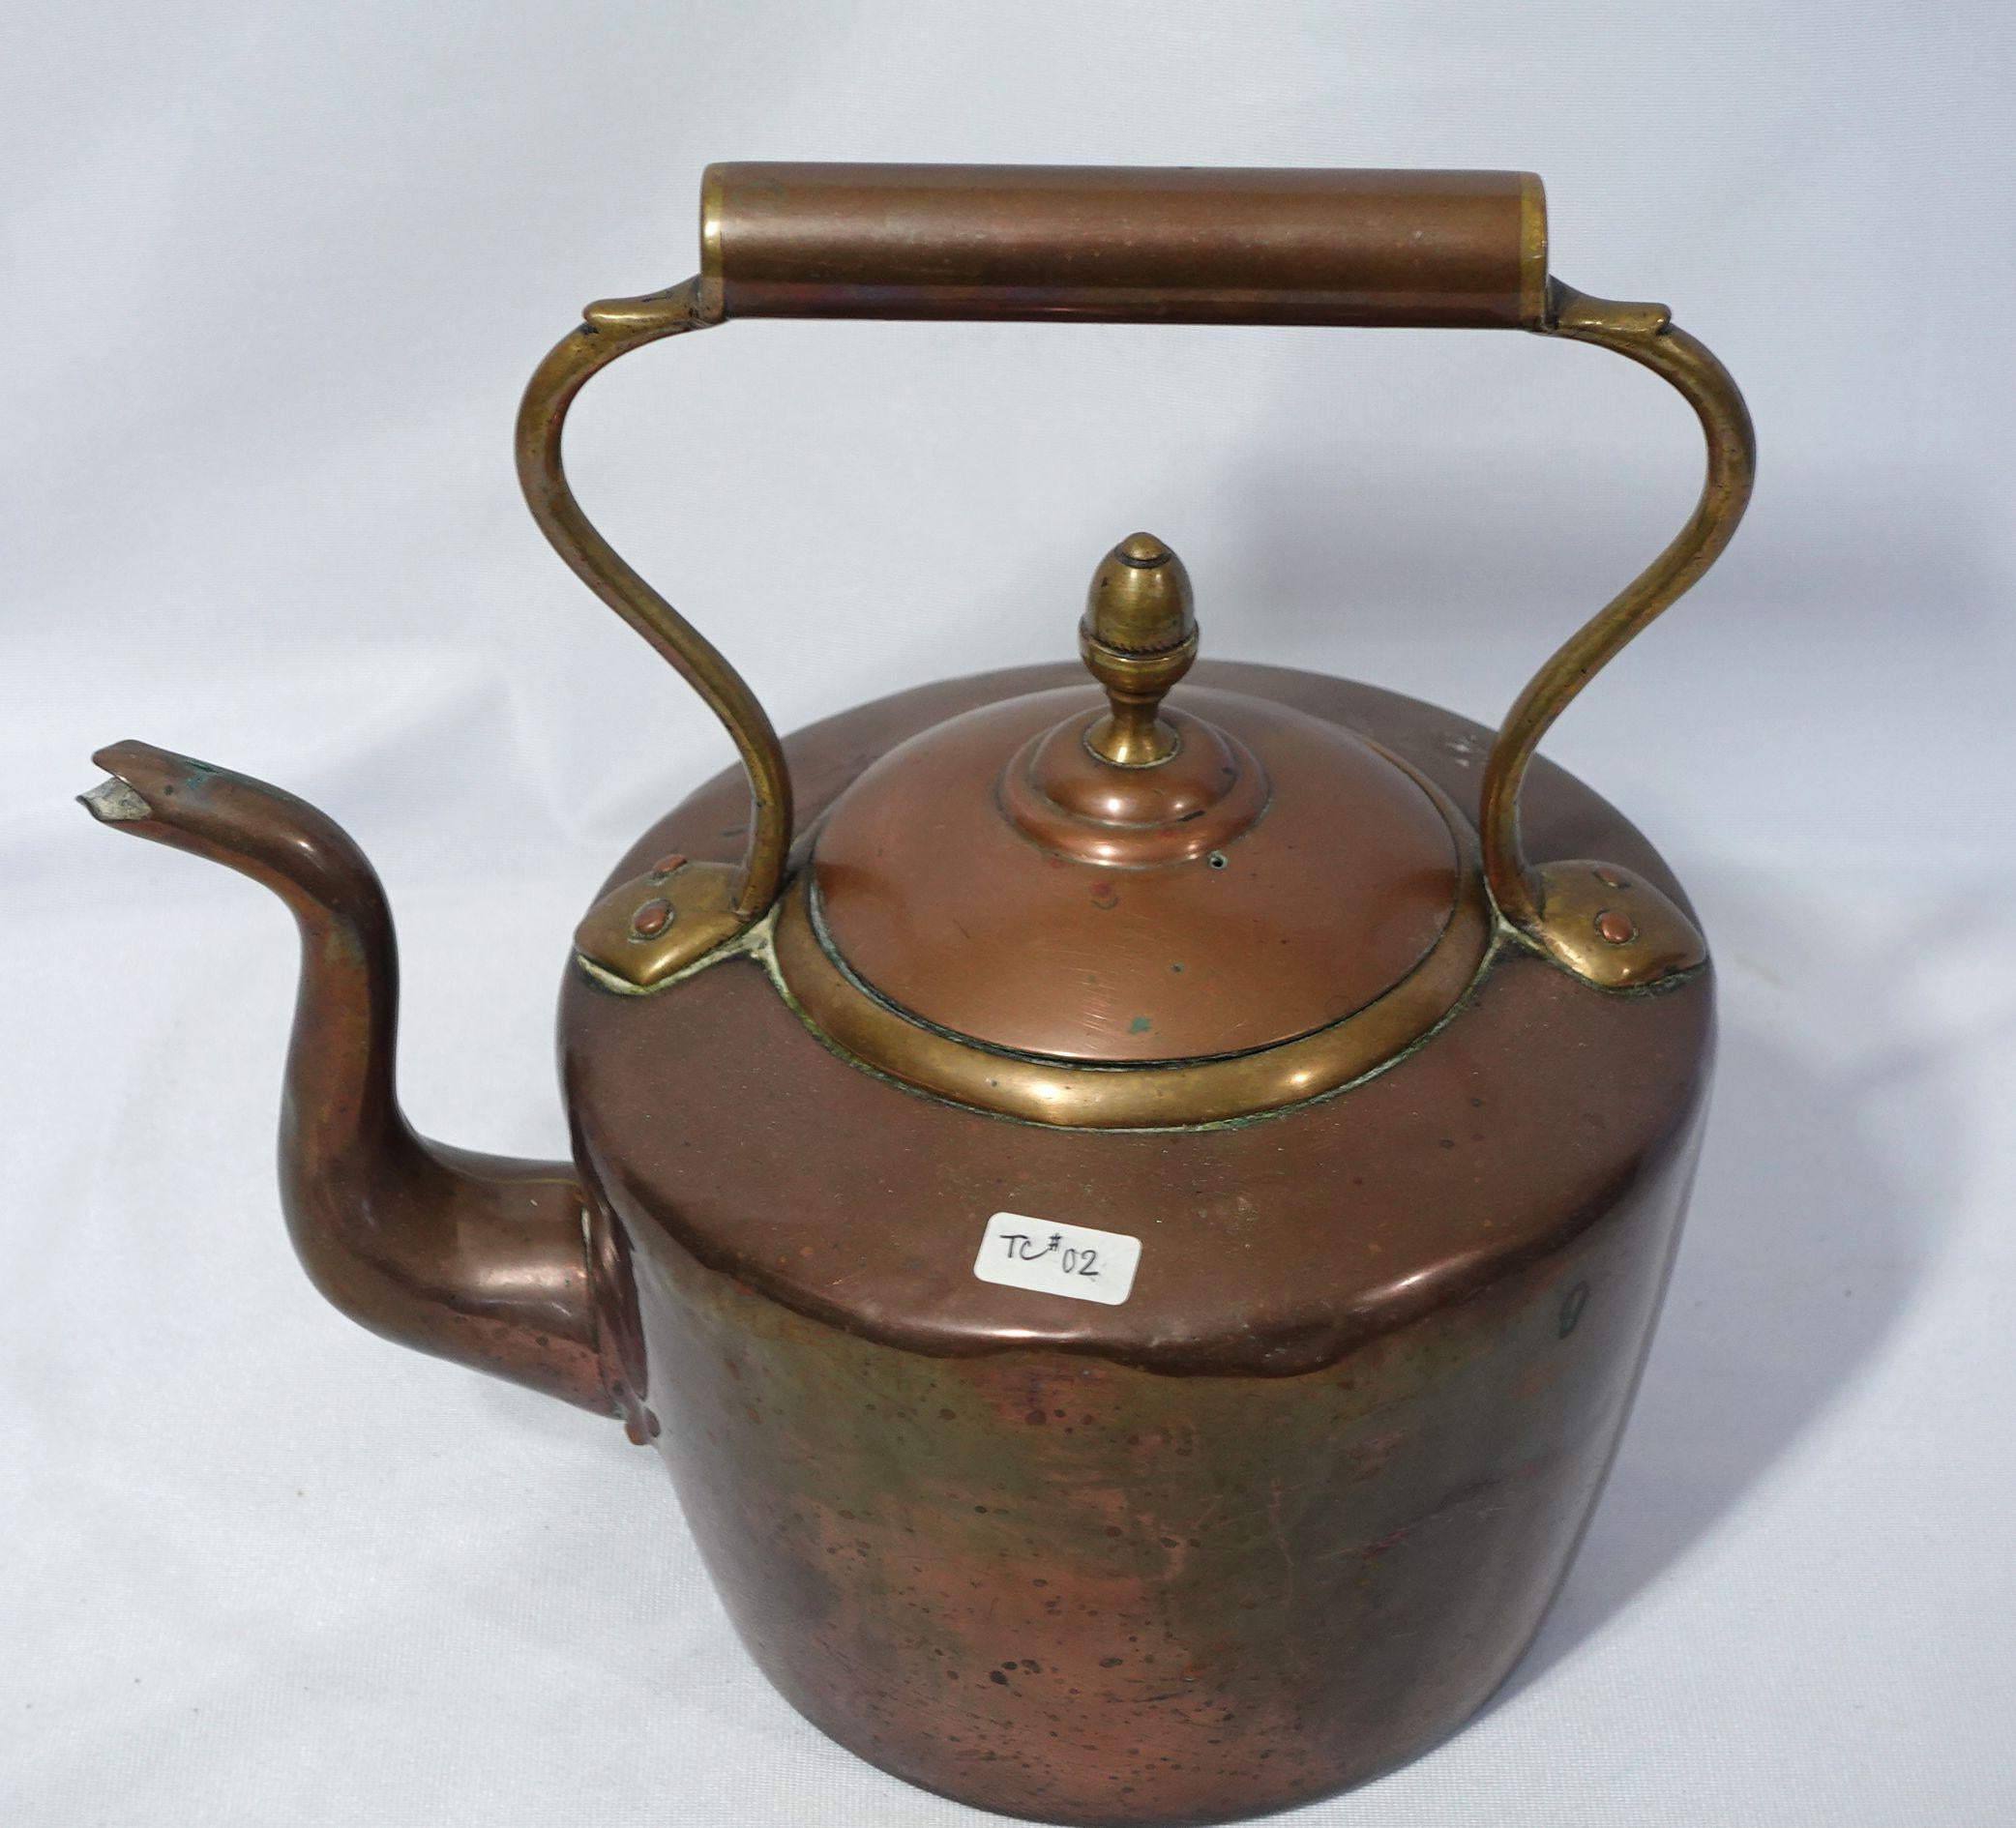 Martelée à la main, une grande et lourde bouilloire à thé en cuivre fabriquée en Angleterre au 19e siècle, très bien faite à la main avec un artisanat délicat, et une antiquité de grande collection.
